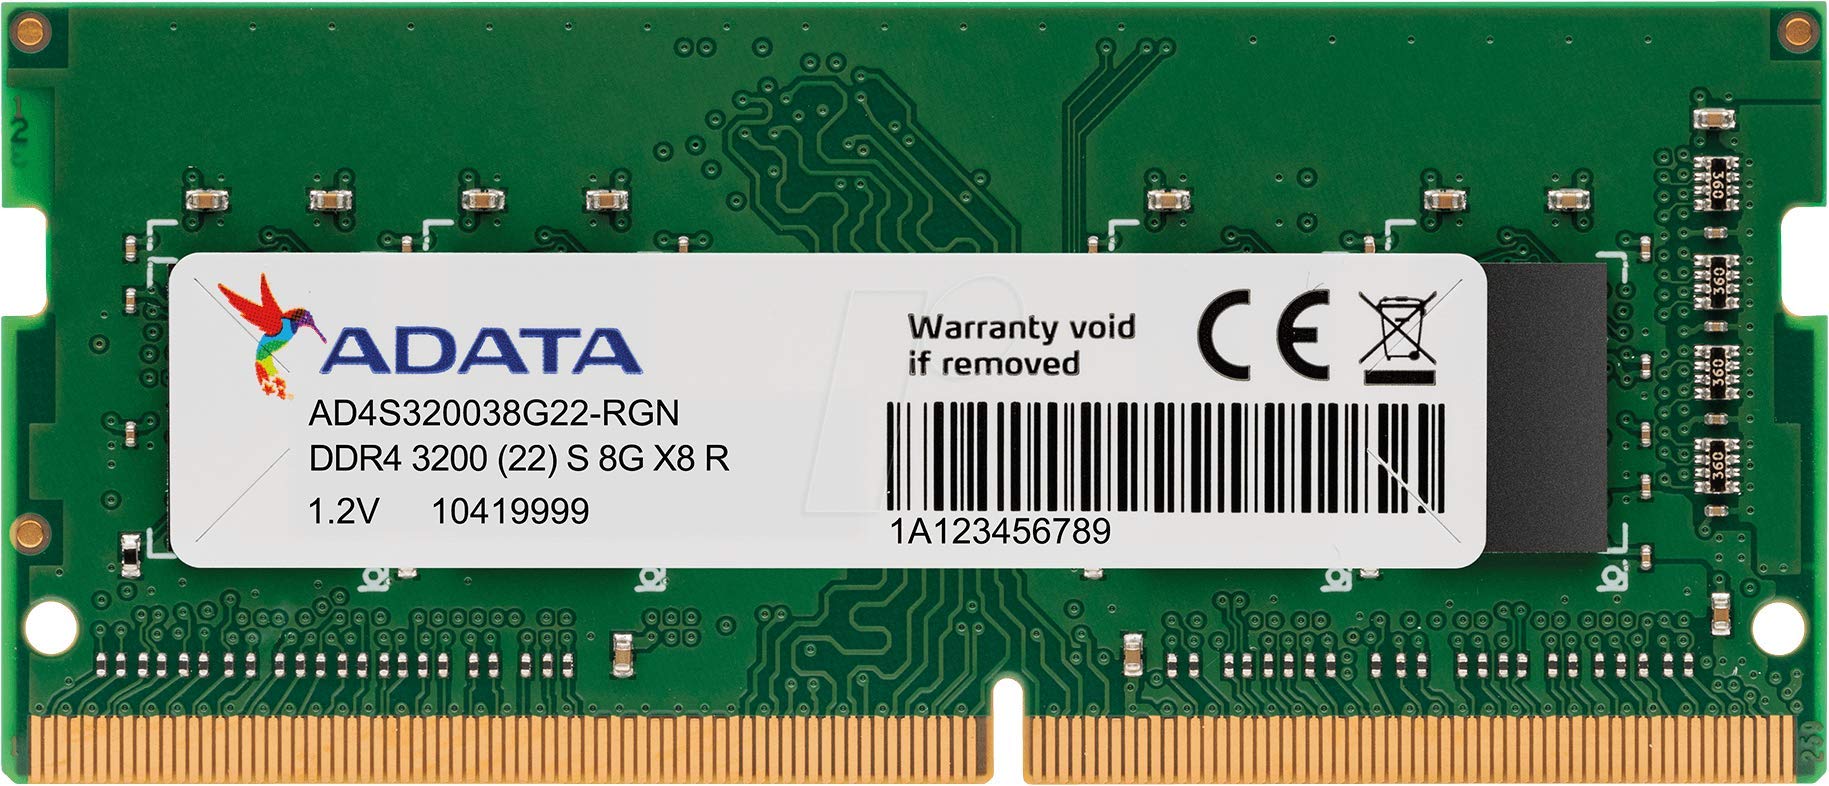 8 GB DDR4 3200MHZ